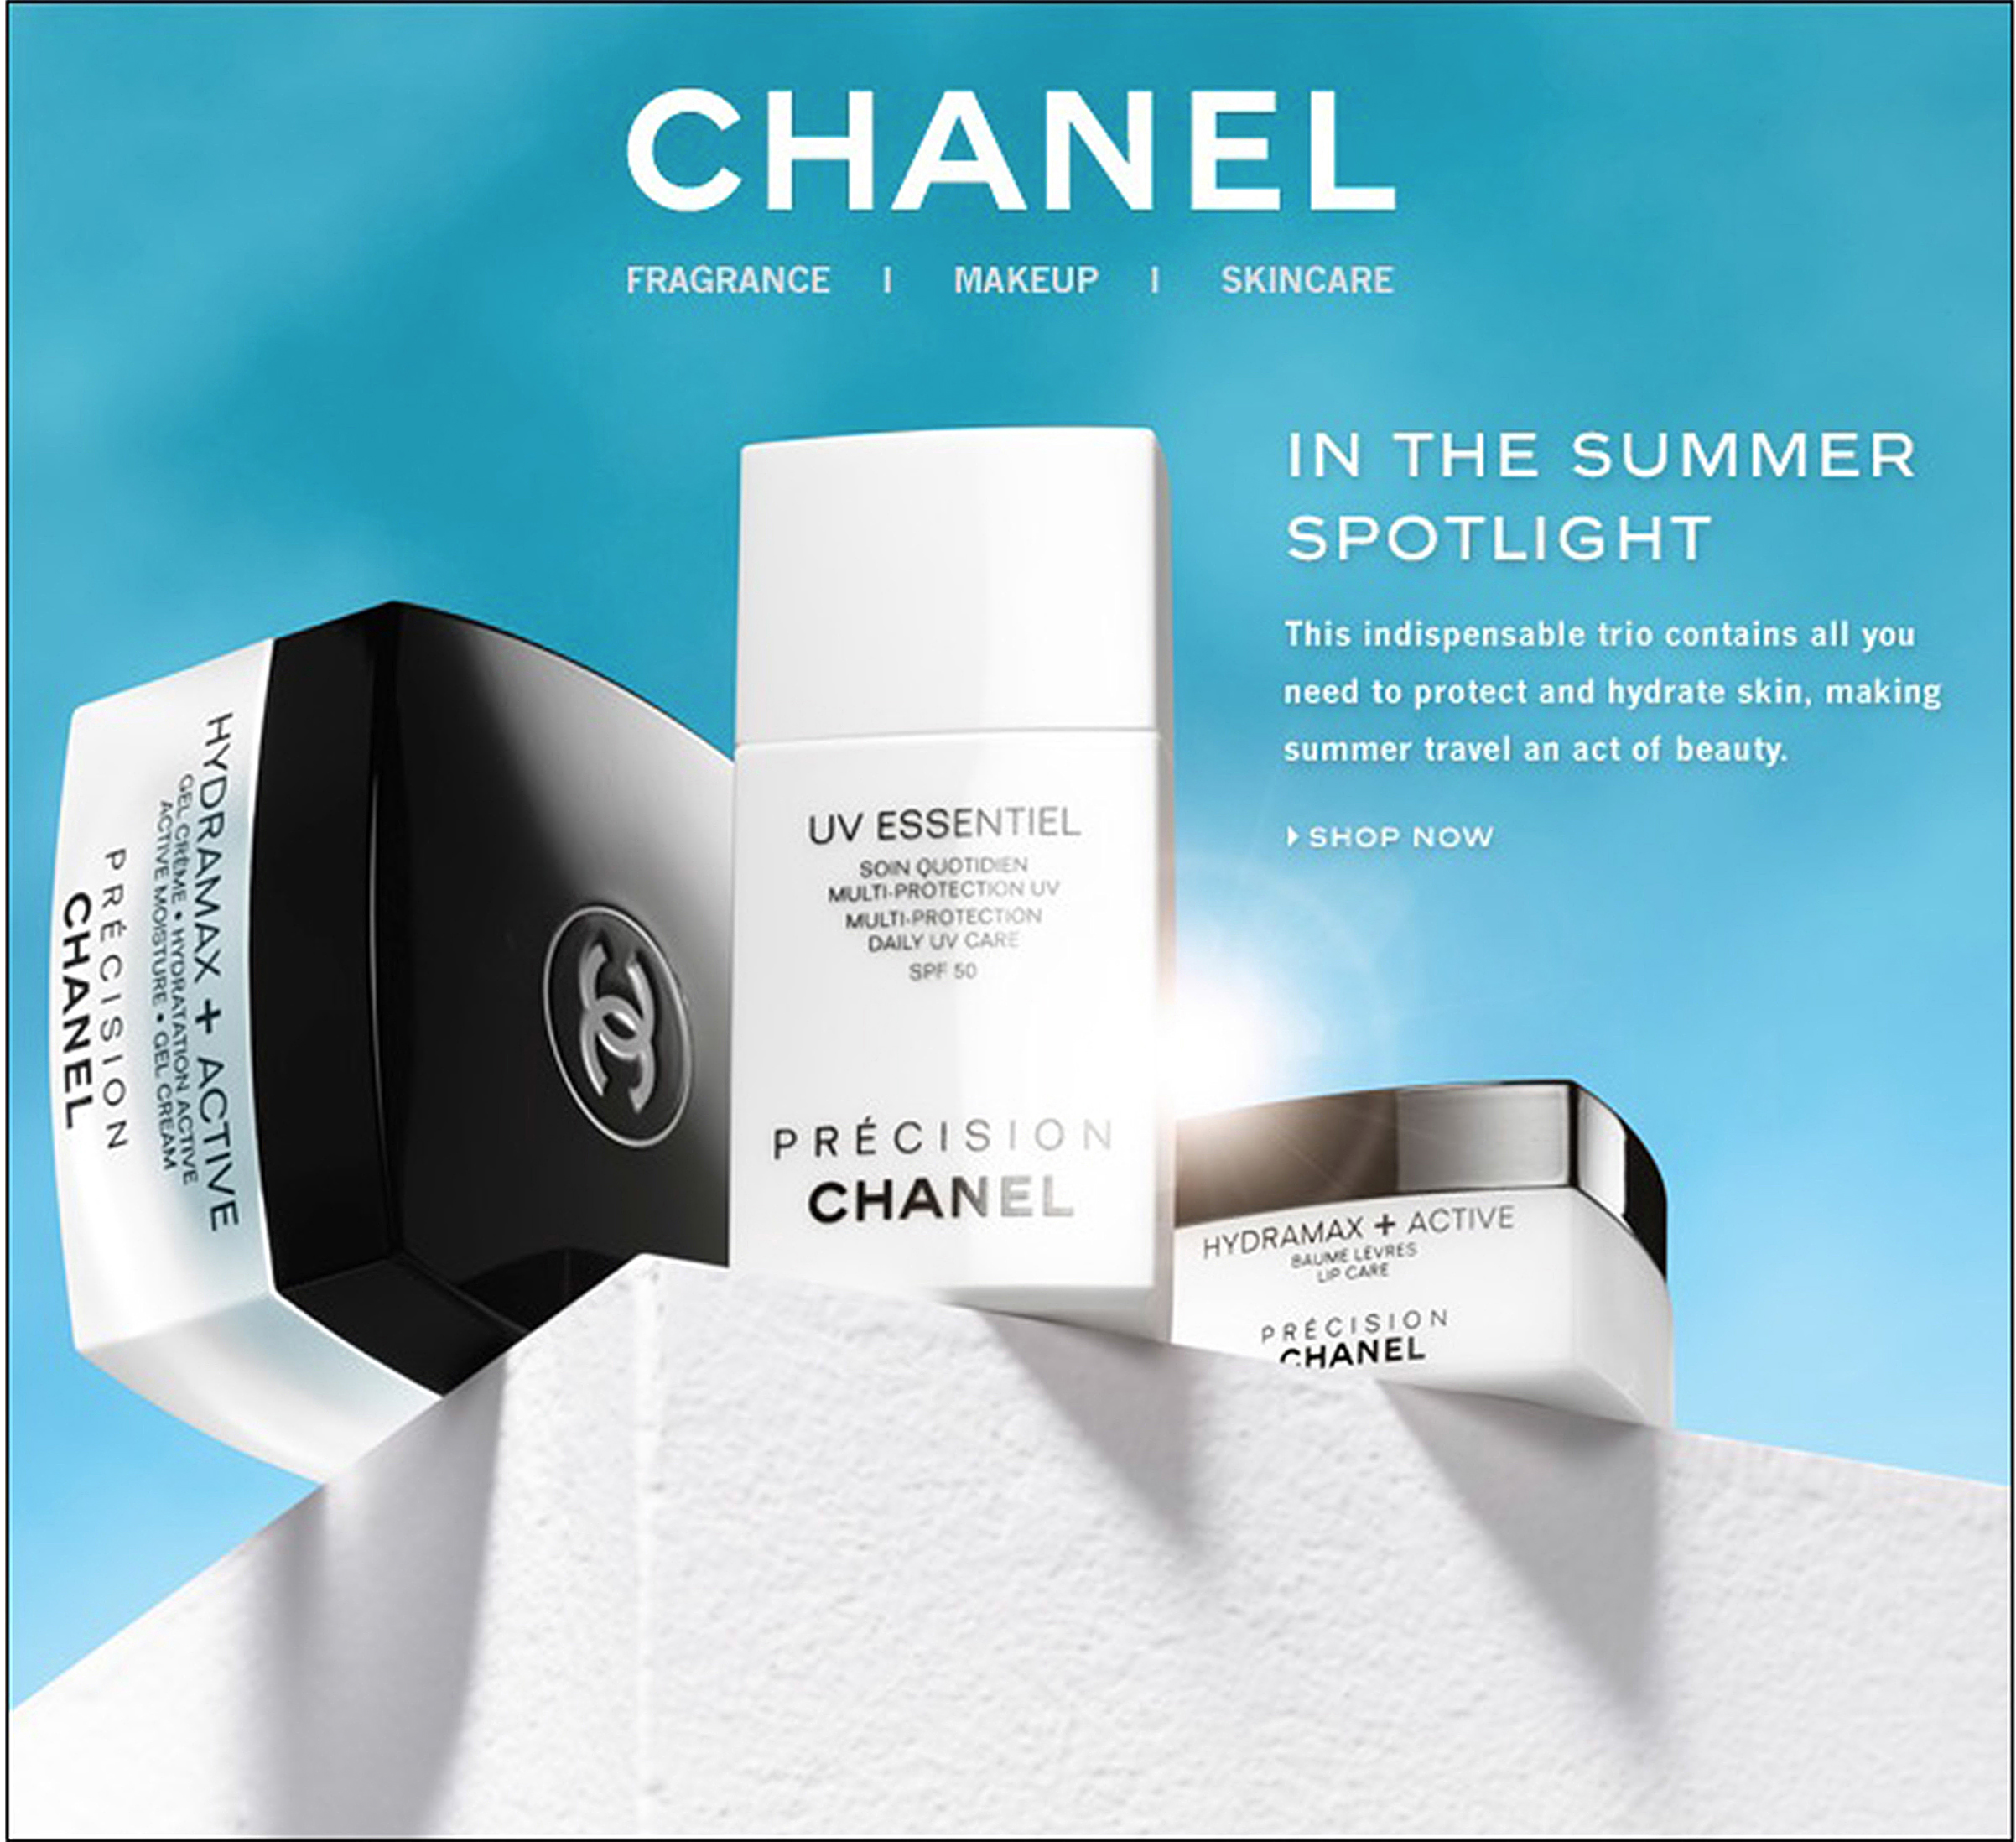 Find the best price on Chanel Precision Hydramax Active Moisture Gel Cream  50ml